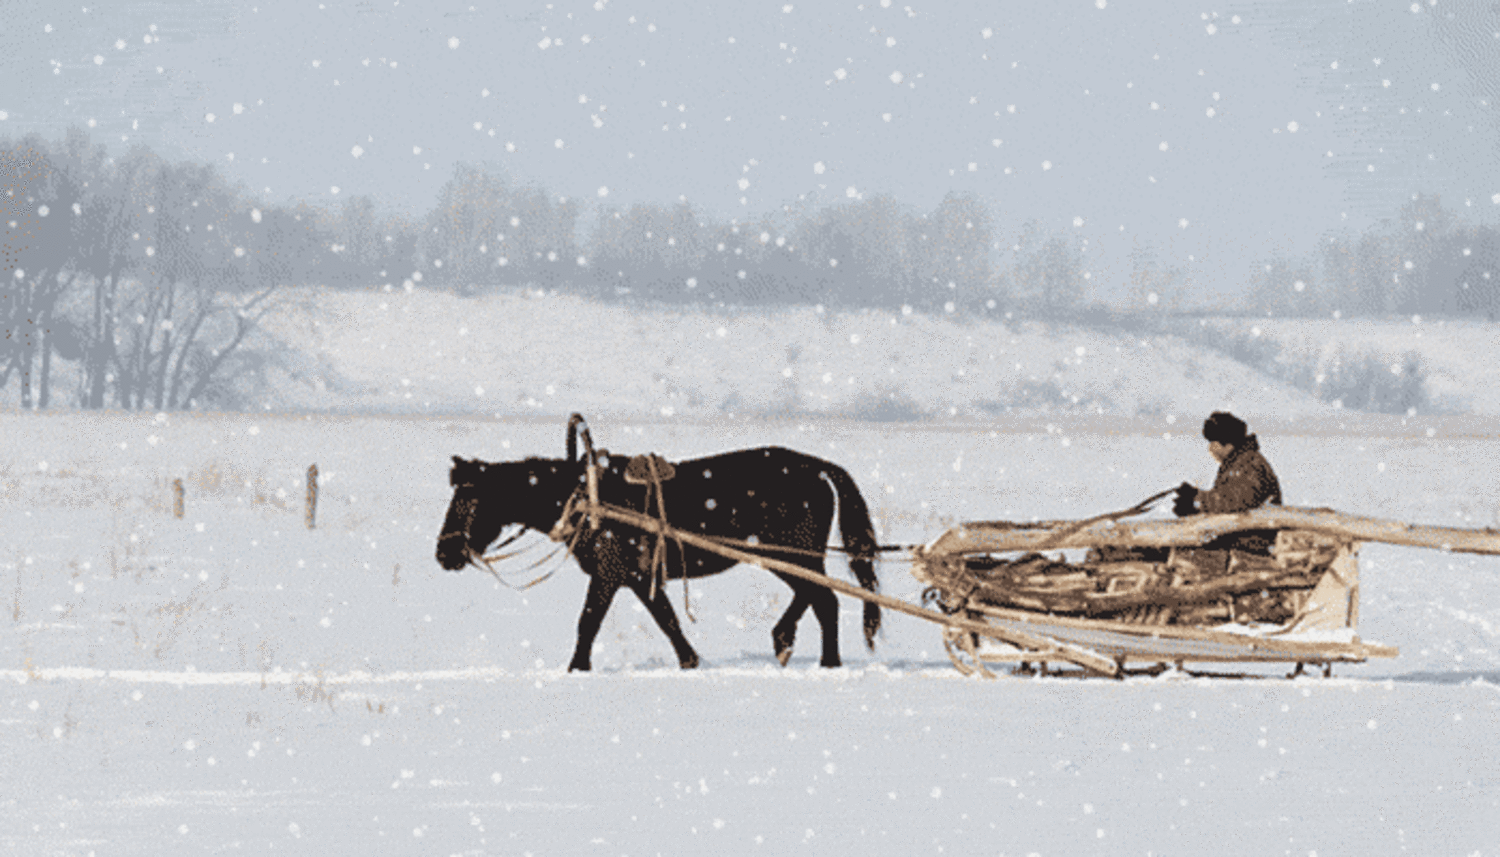 Невдалеке стояла телега запряженная. Лошадь с санями зимой. Повозка с лошадью зимой. Крестьянин на санях. Дровни крестьянские сани.